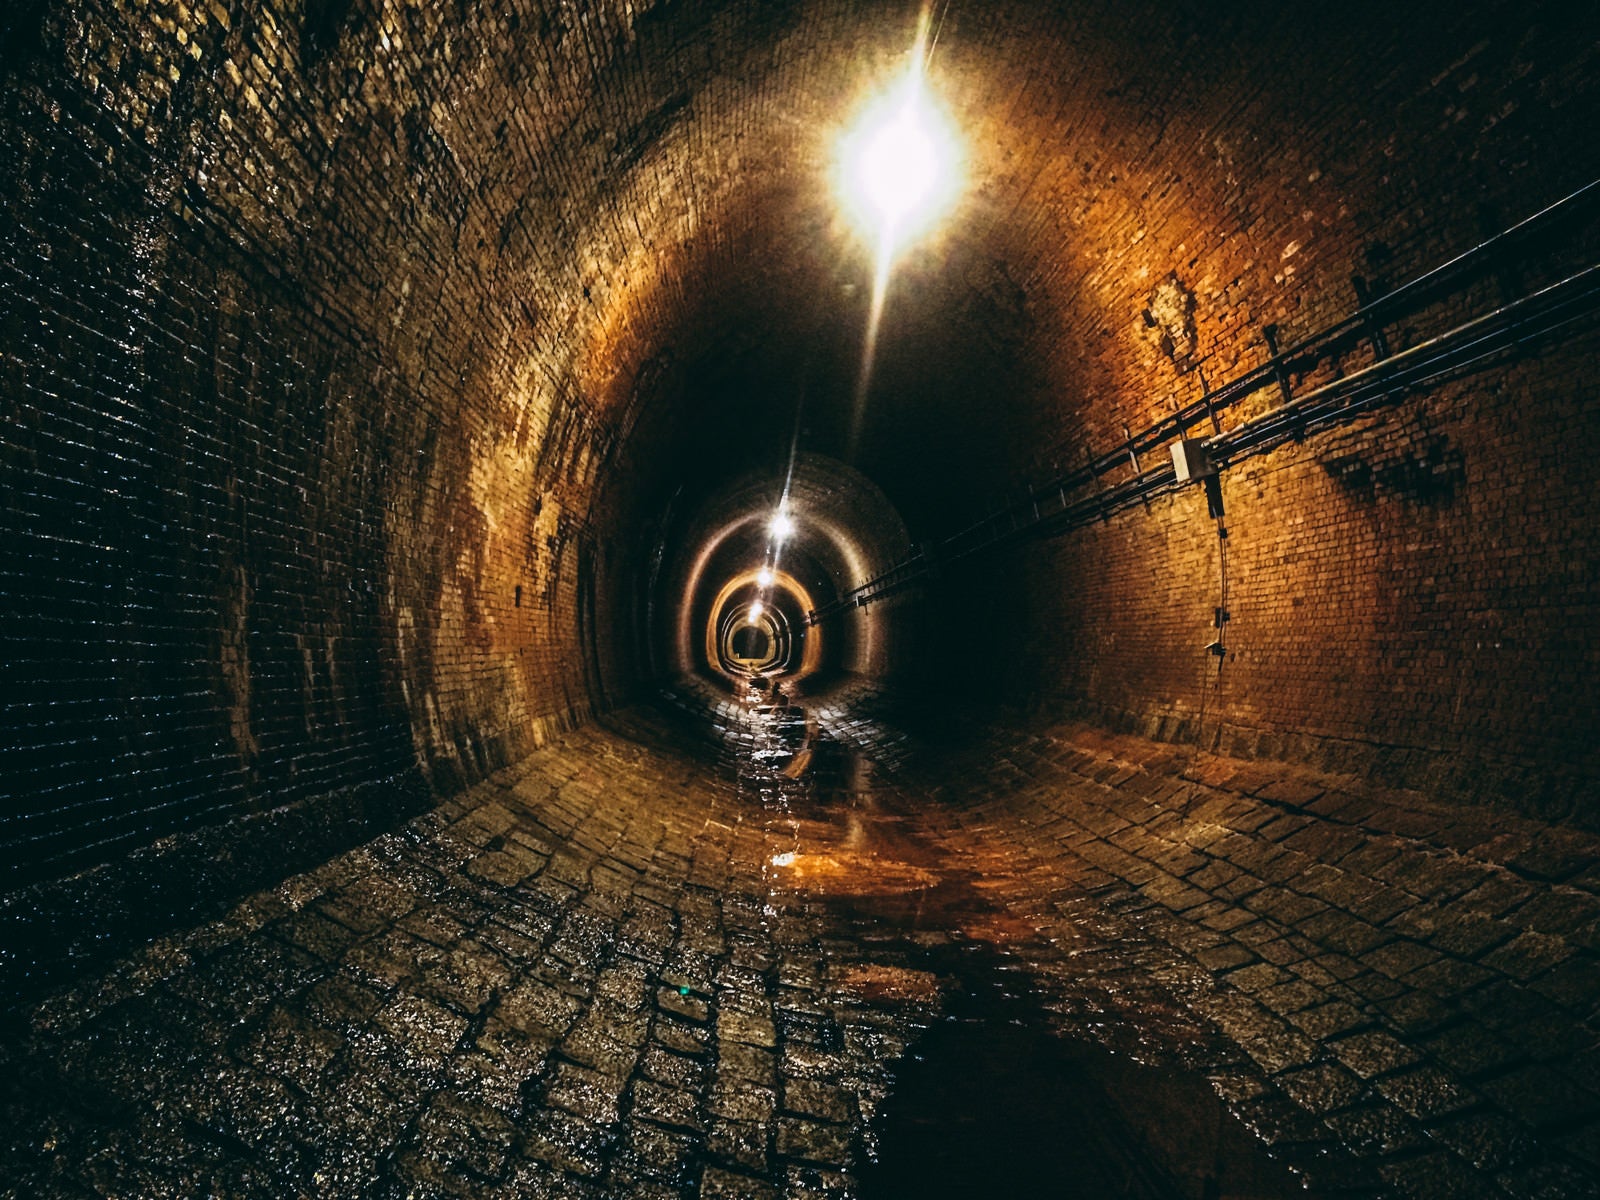 「レンガでできた湊川隧道トンネル」の写真